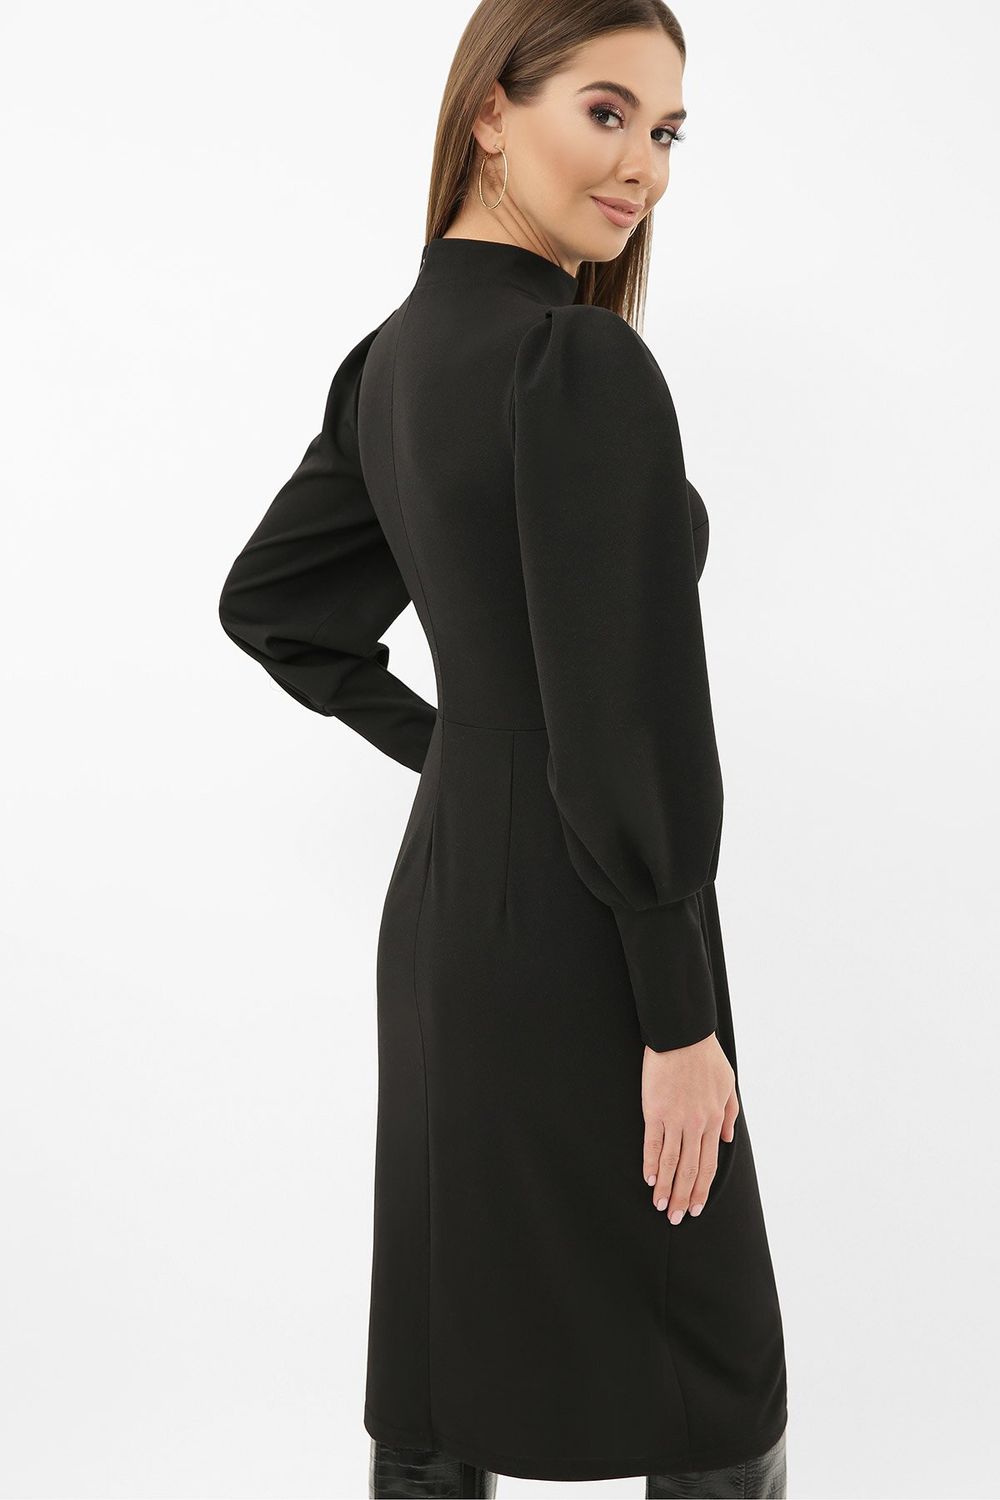 Приталенное платье длиной миди с разрезом черное - фото